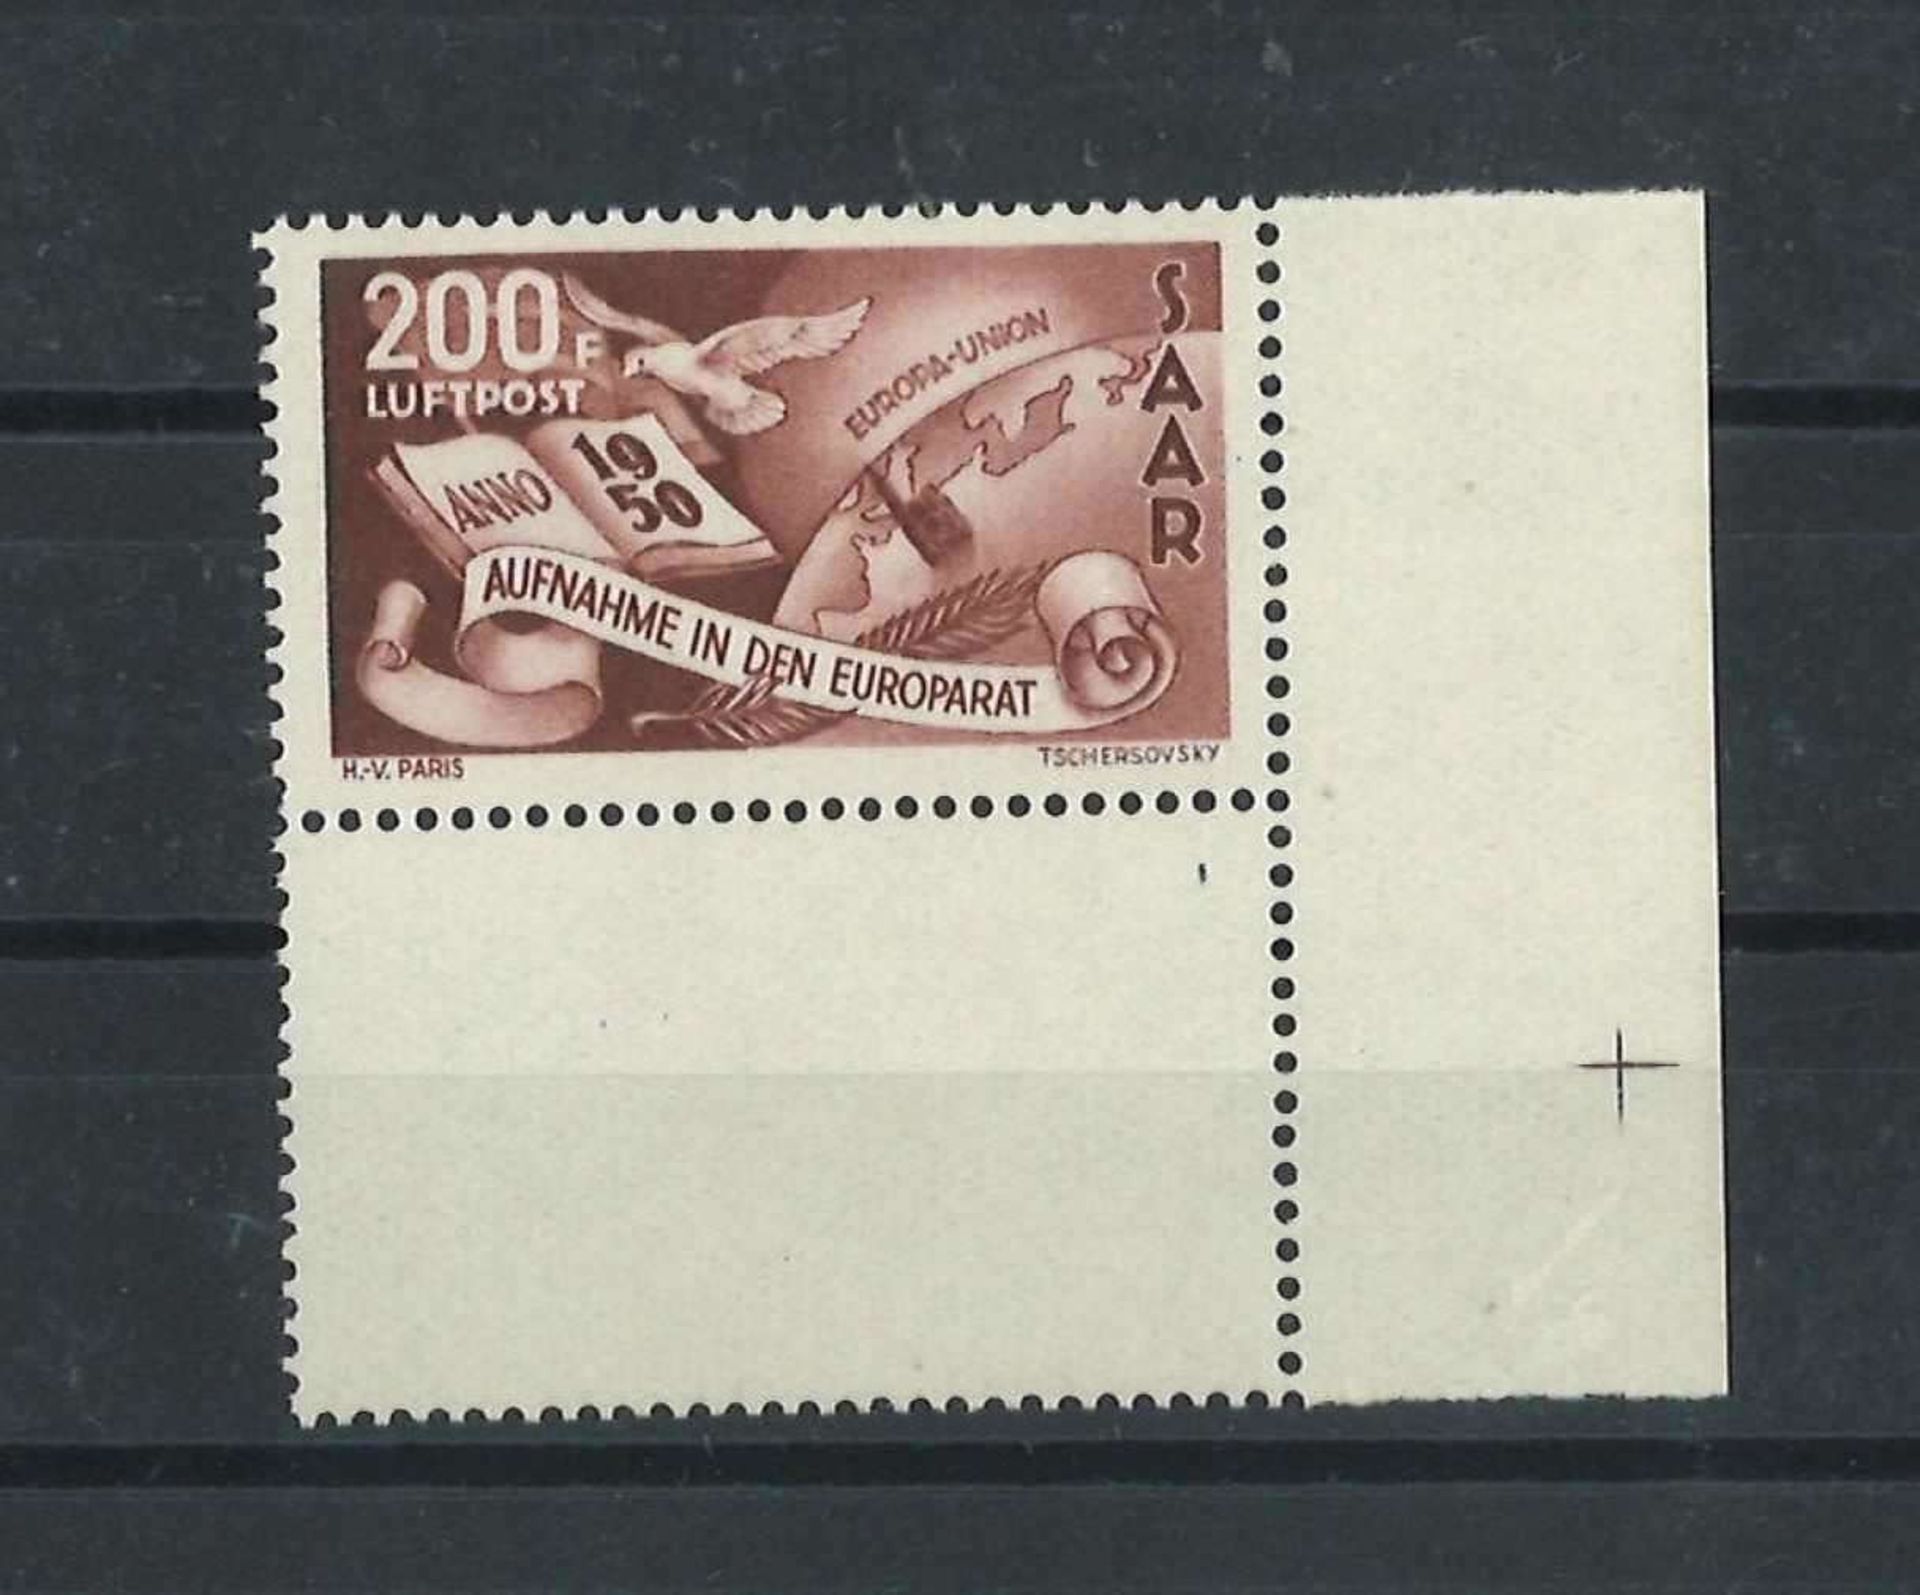 Saarland 1950, Mi 296, Flugpostmarke, postfrischSaarland 1950, Mi 296, airmail stamp, mint never